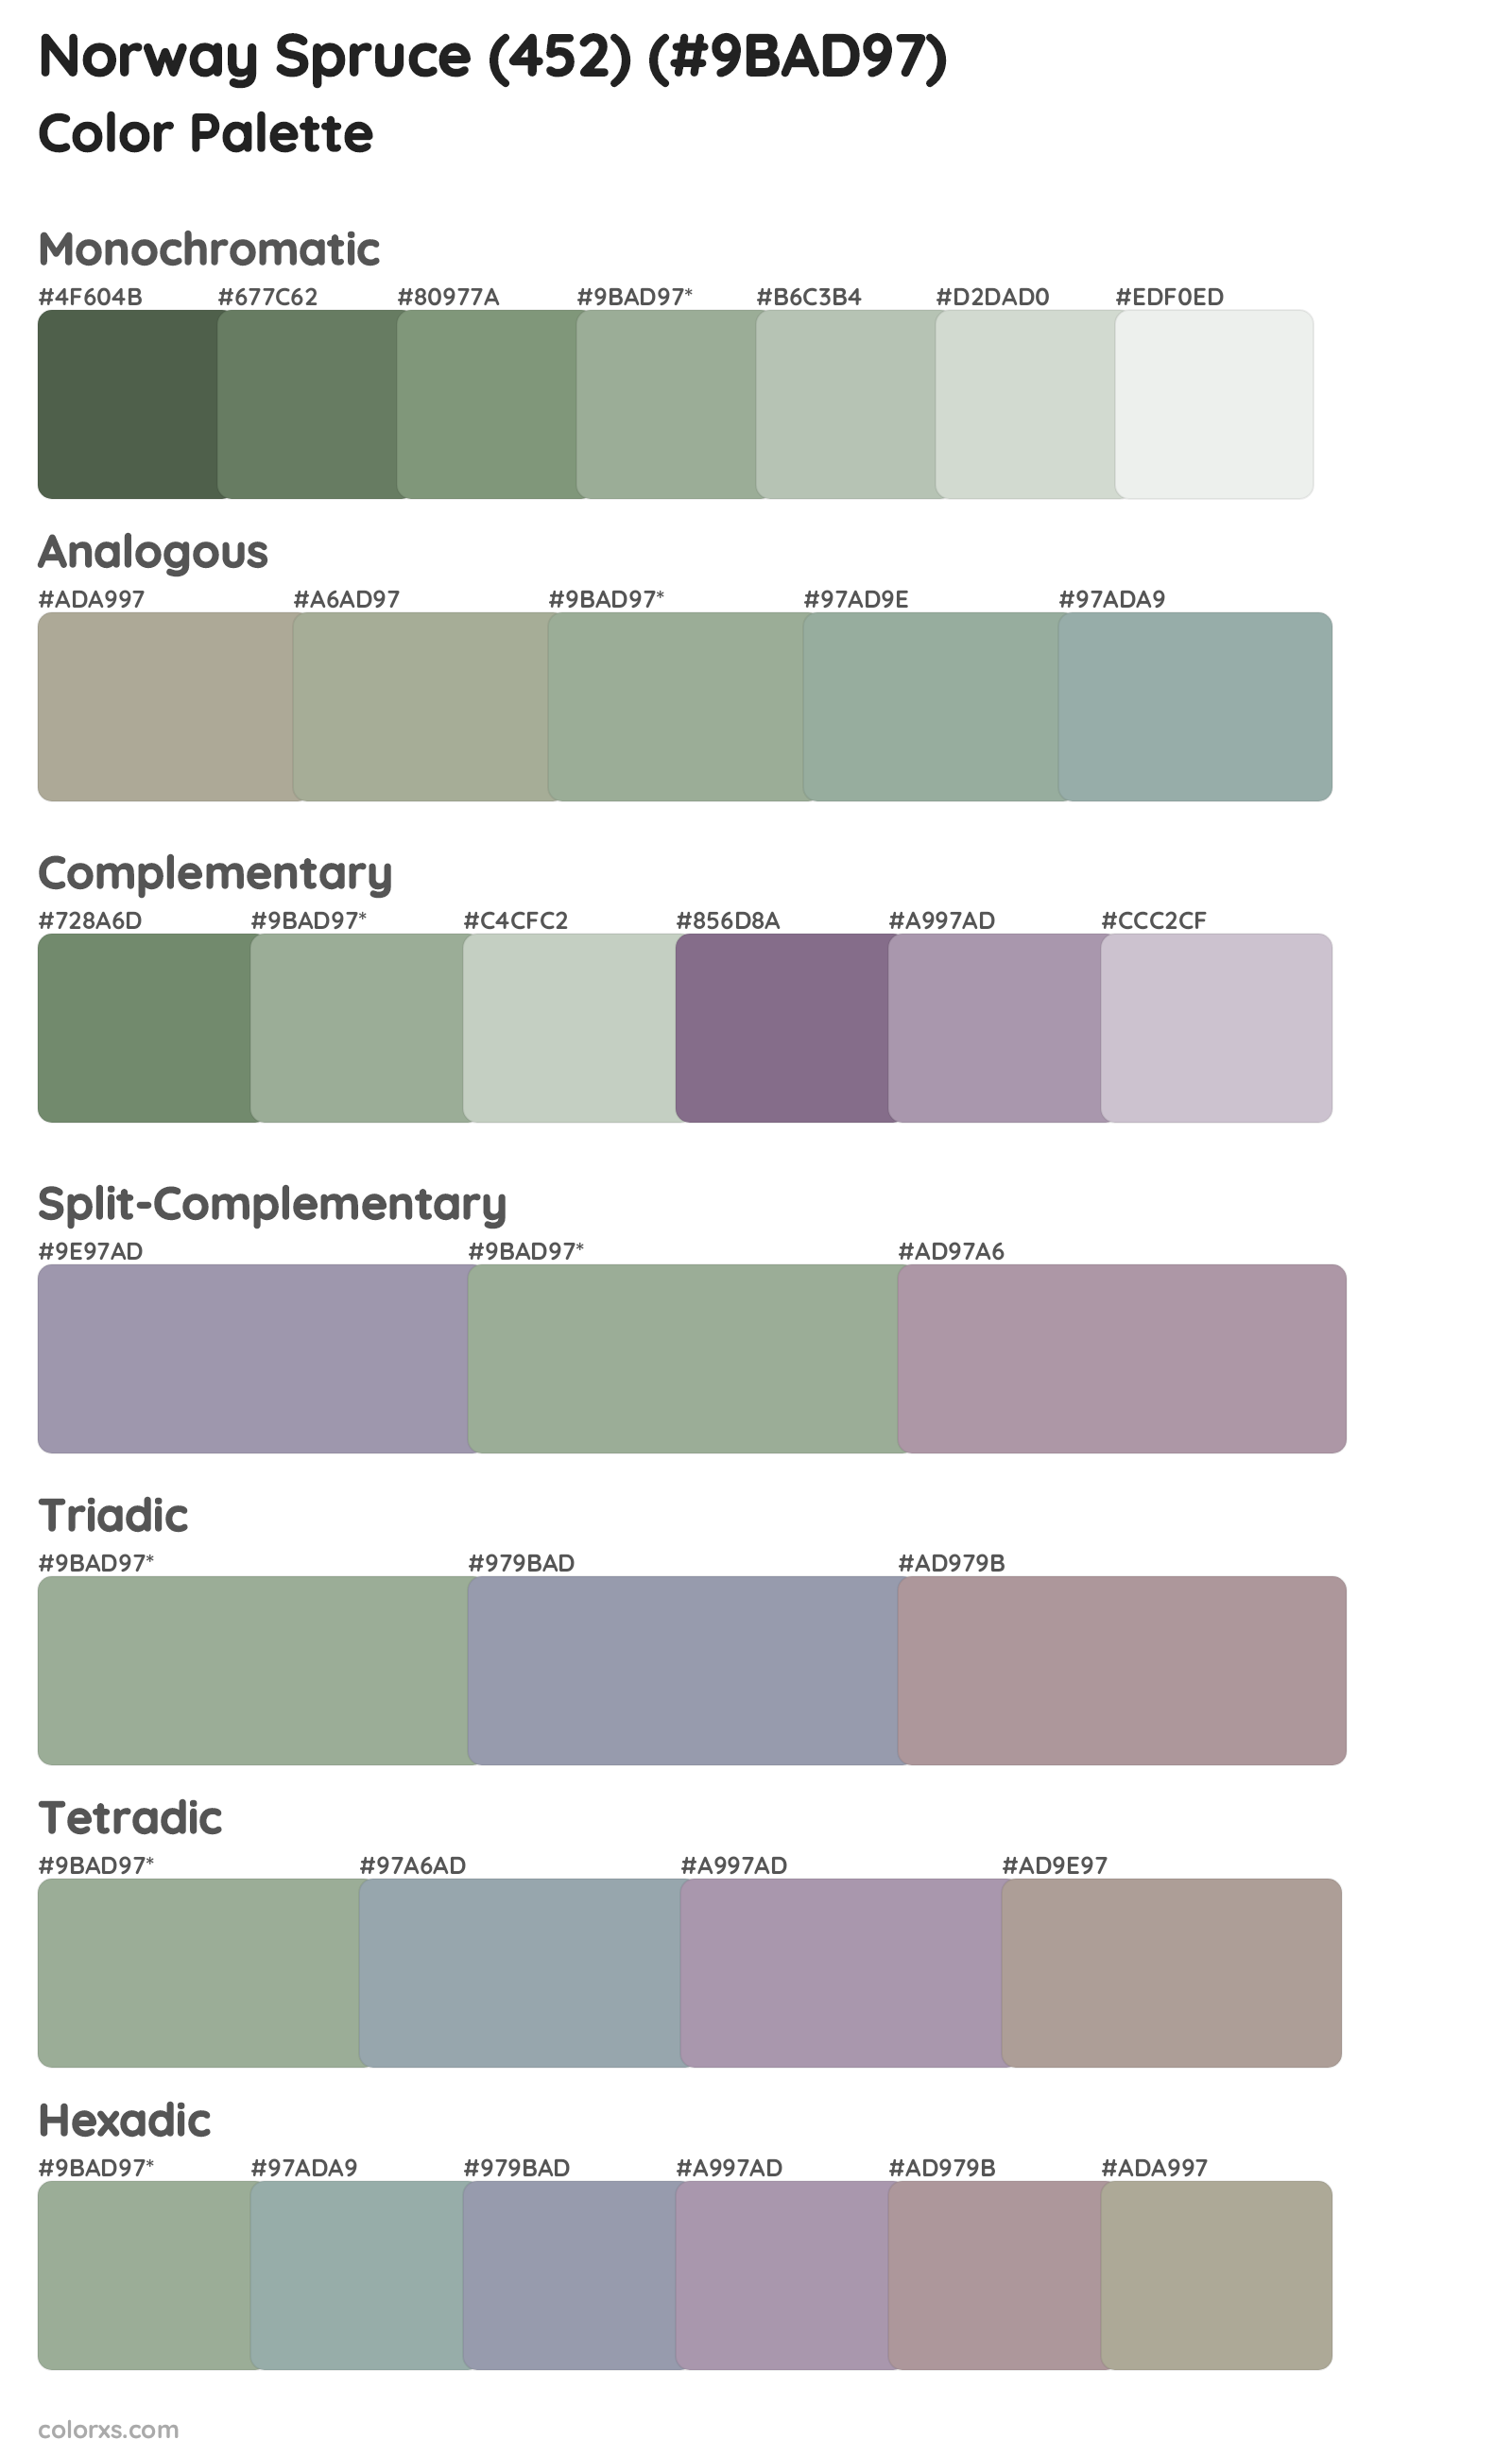 Norway Spruce (452) Color Scheme Palettes